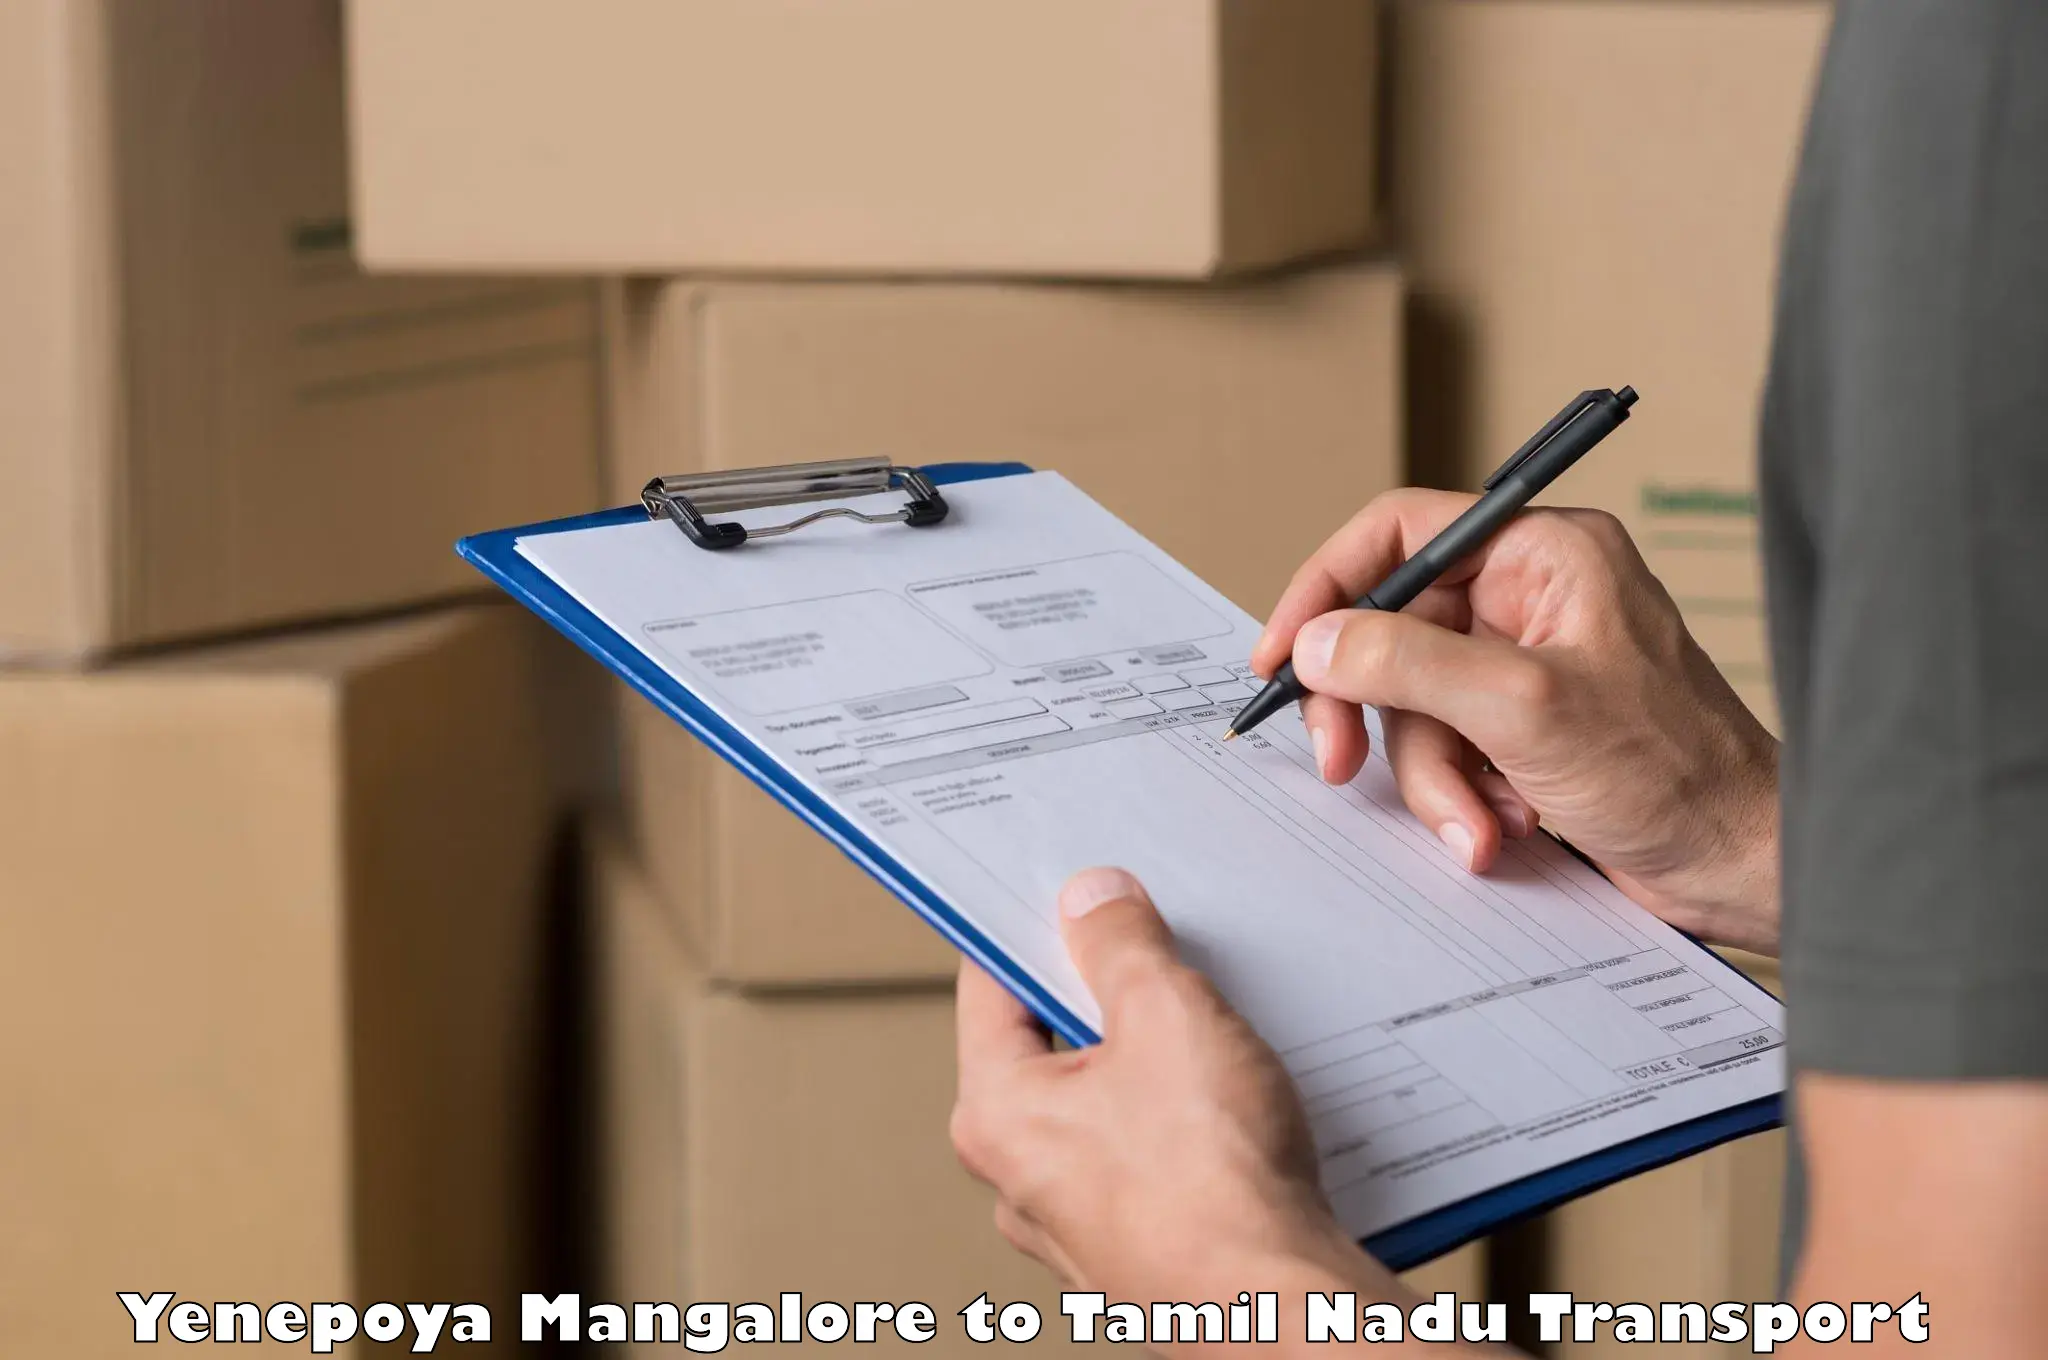 Transport in sharing Yenepoya Mangalore to Maharajapuram